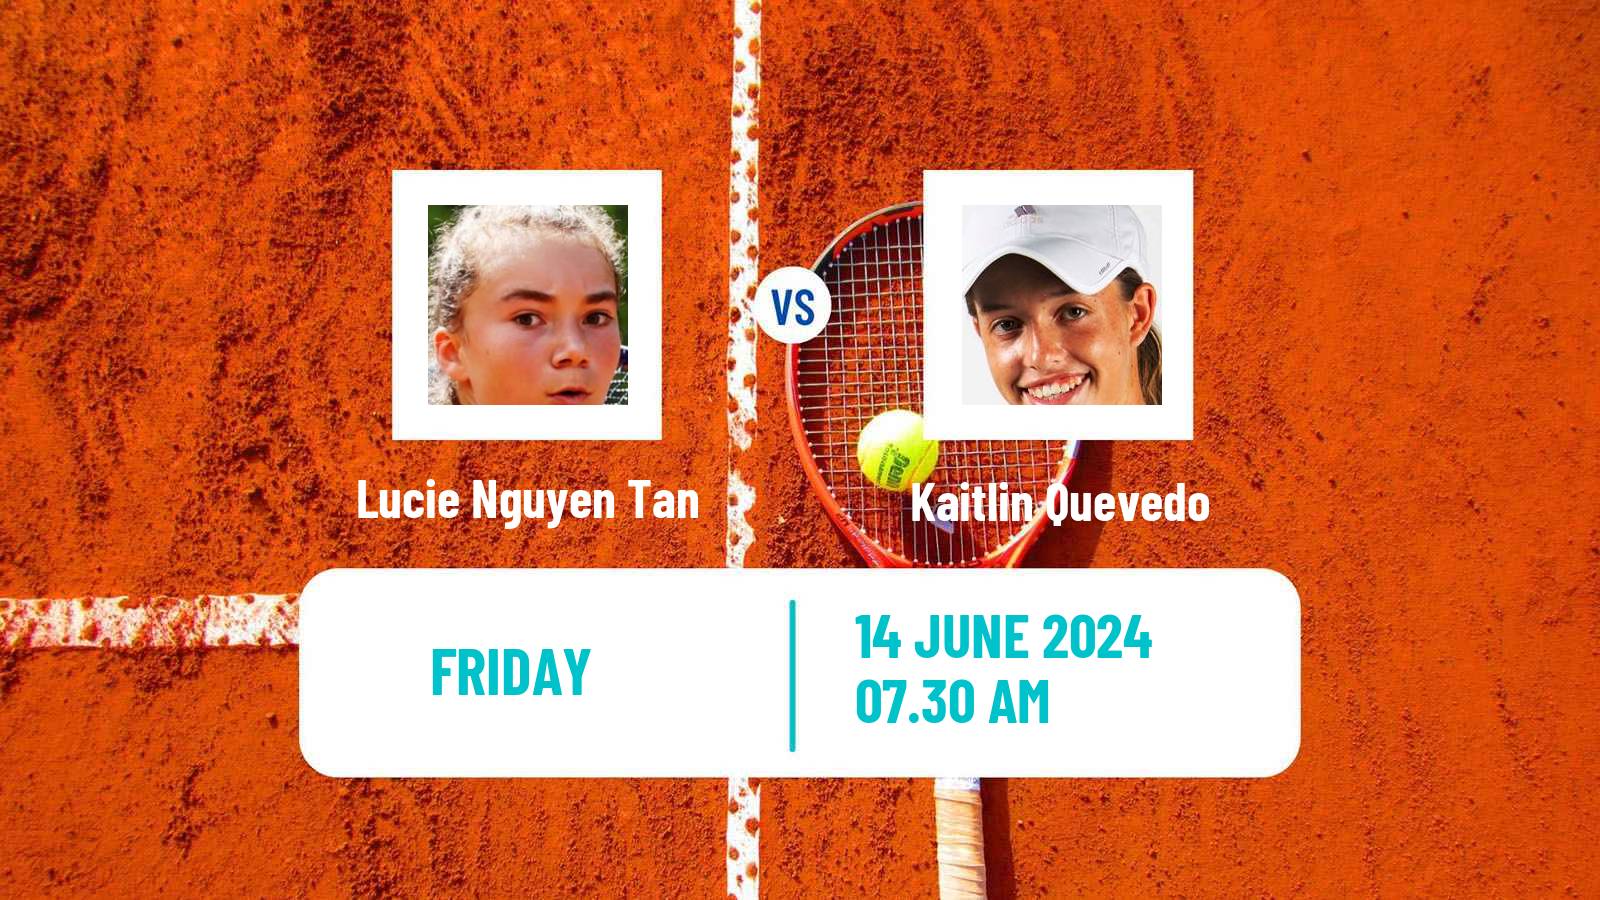 Tennis ITF W15 Madrid 2 Women Lucie Nguyen Tan - Kaitlin Quevedo